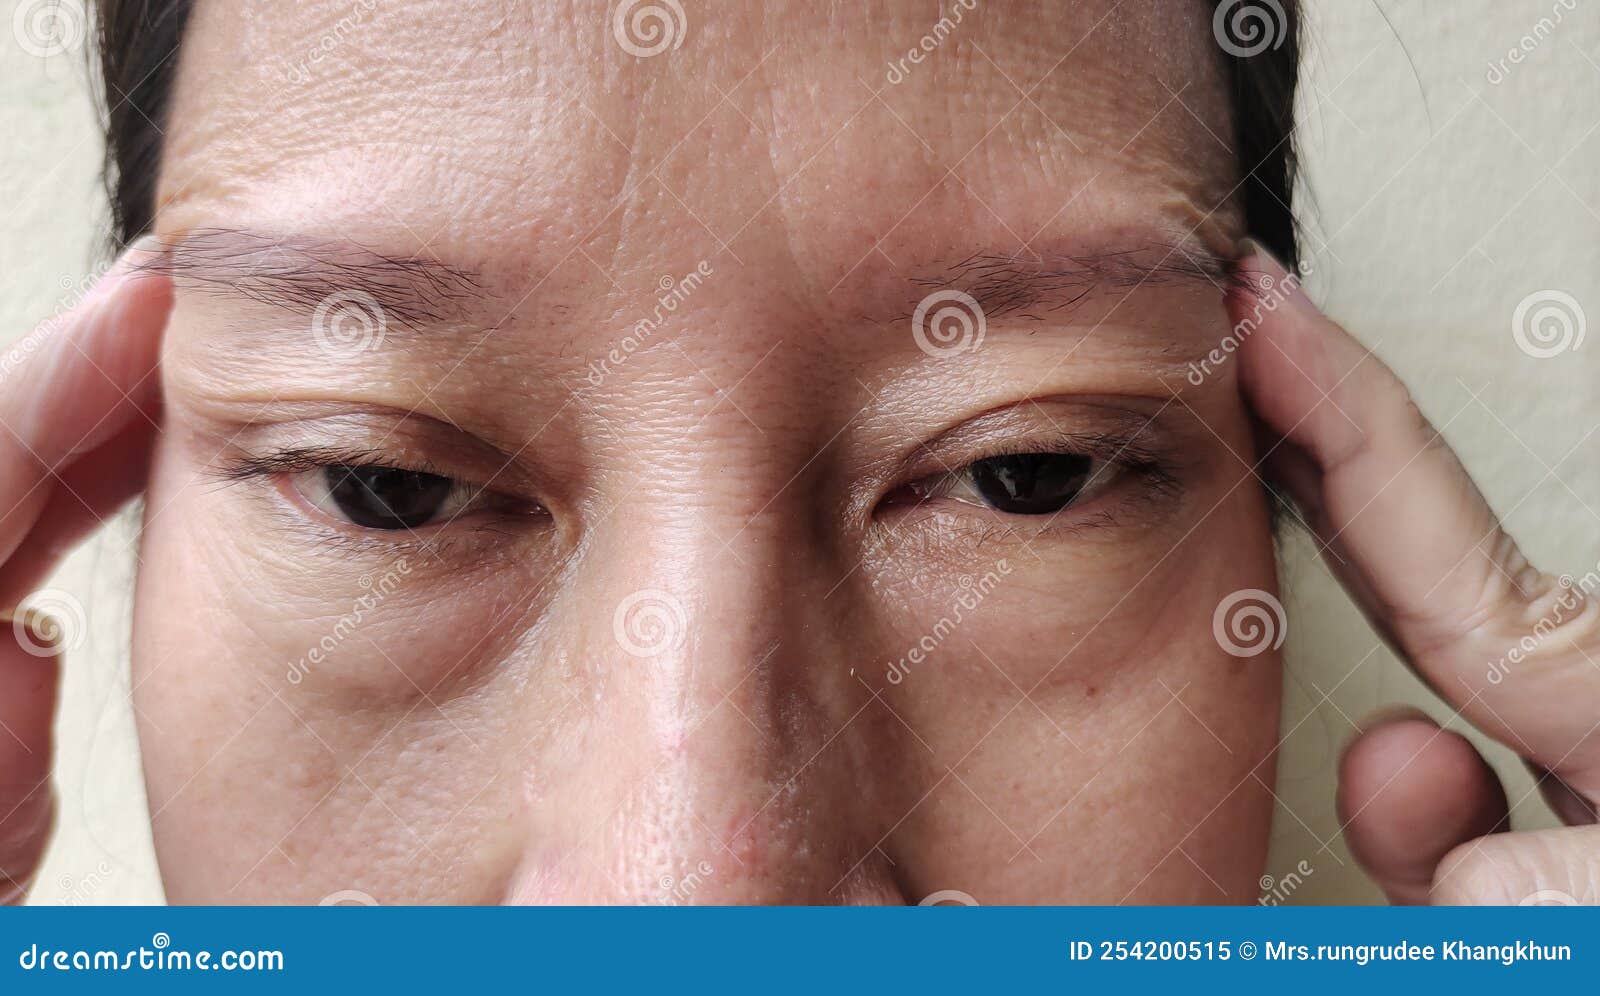 【讨论】一例伴有上睑凹陷和上睑松弛的双眼皮术式选择 - 修复重建和烧伤整形 -丁香园论坛